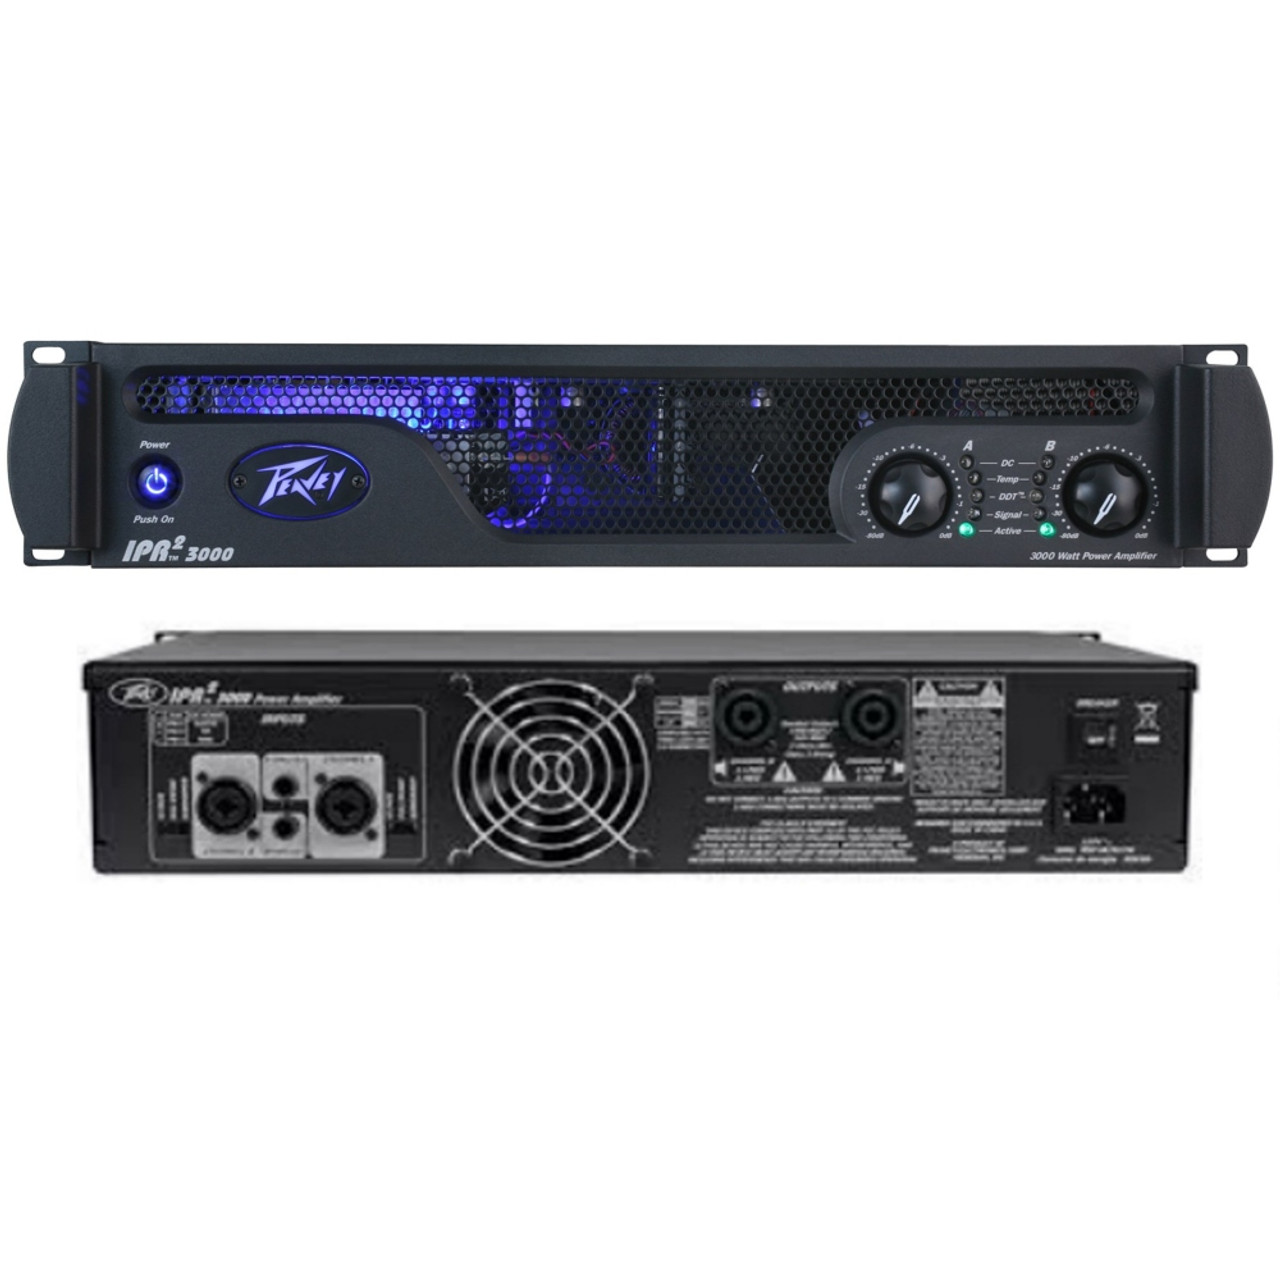 IPR2 2000 Power Amplifier